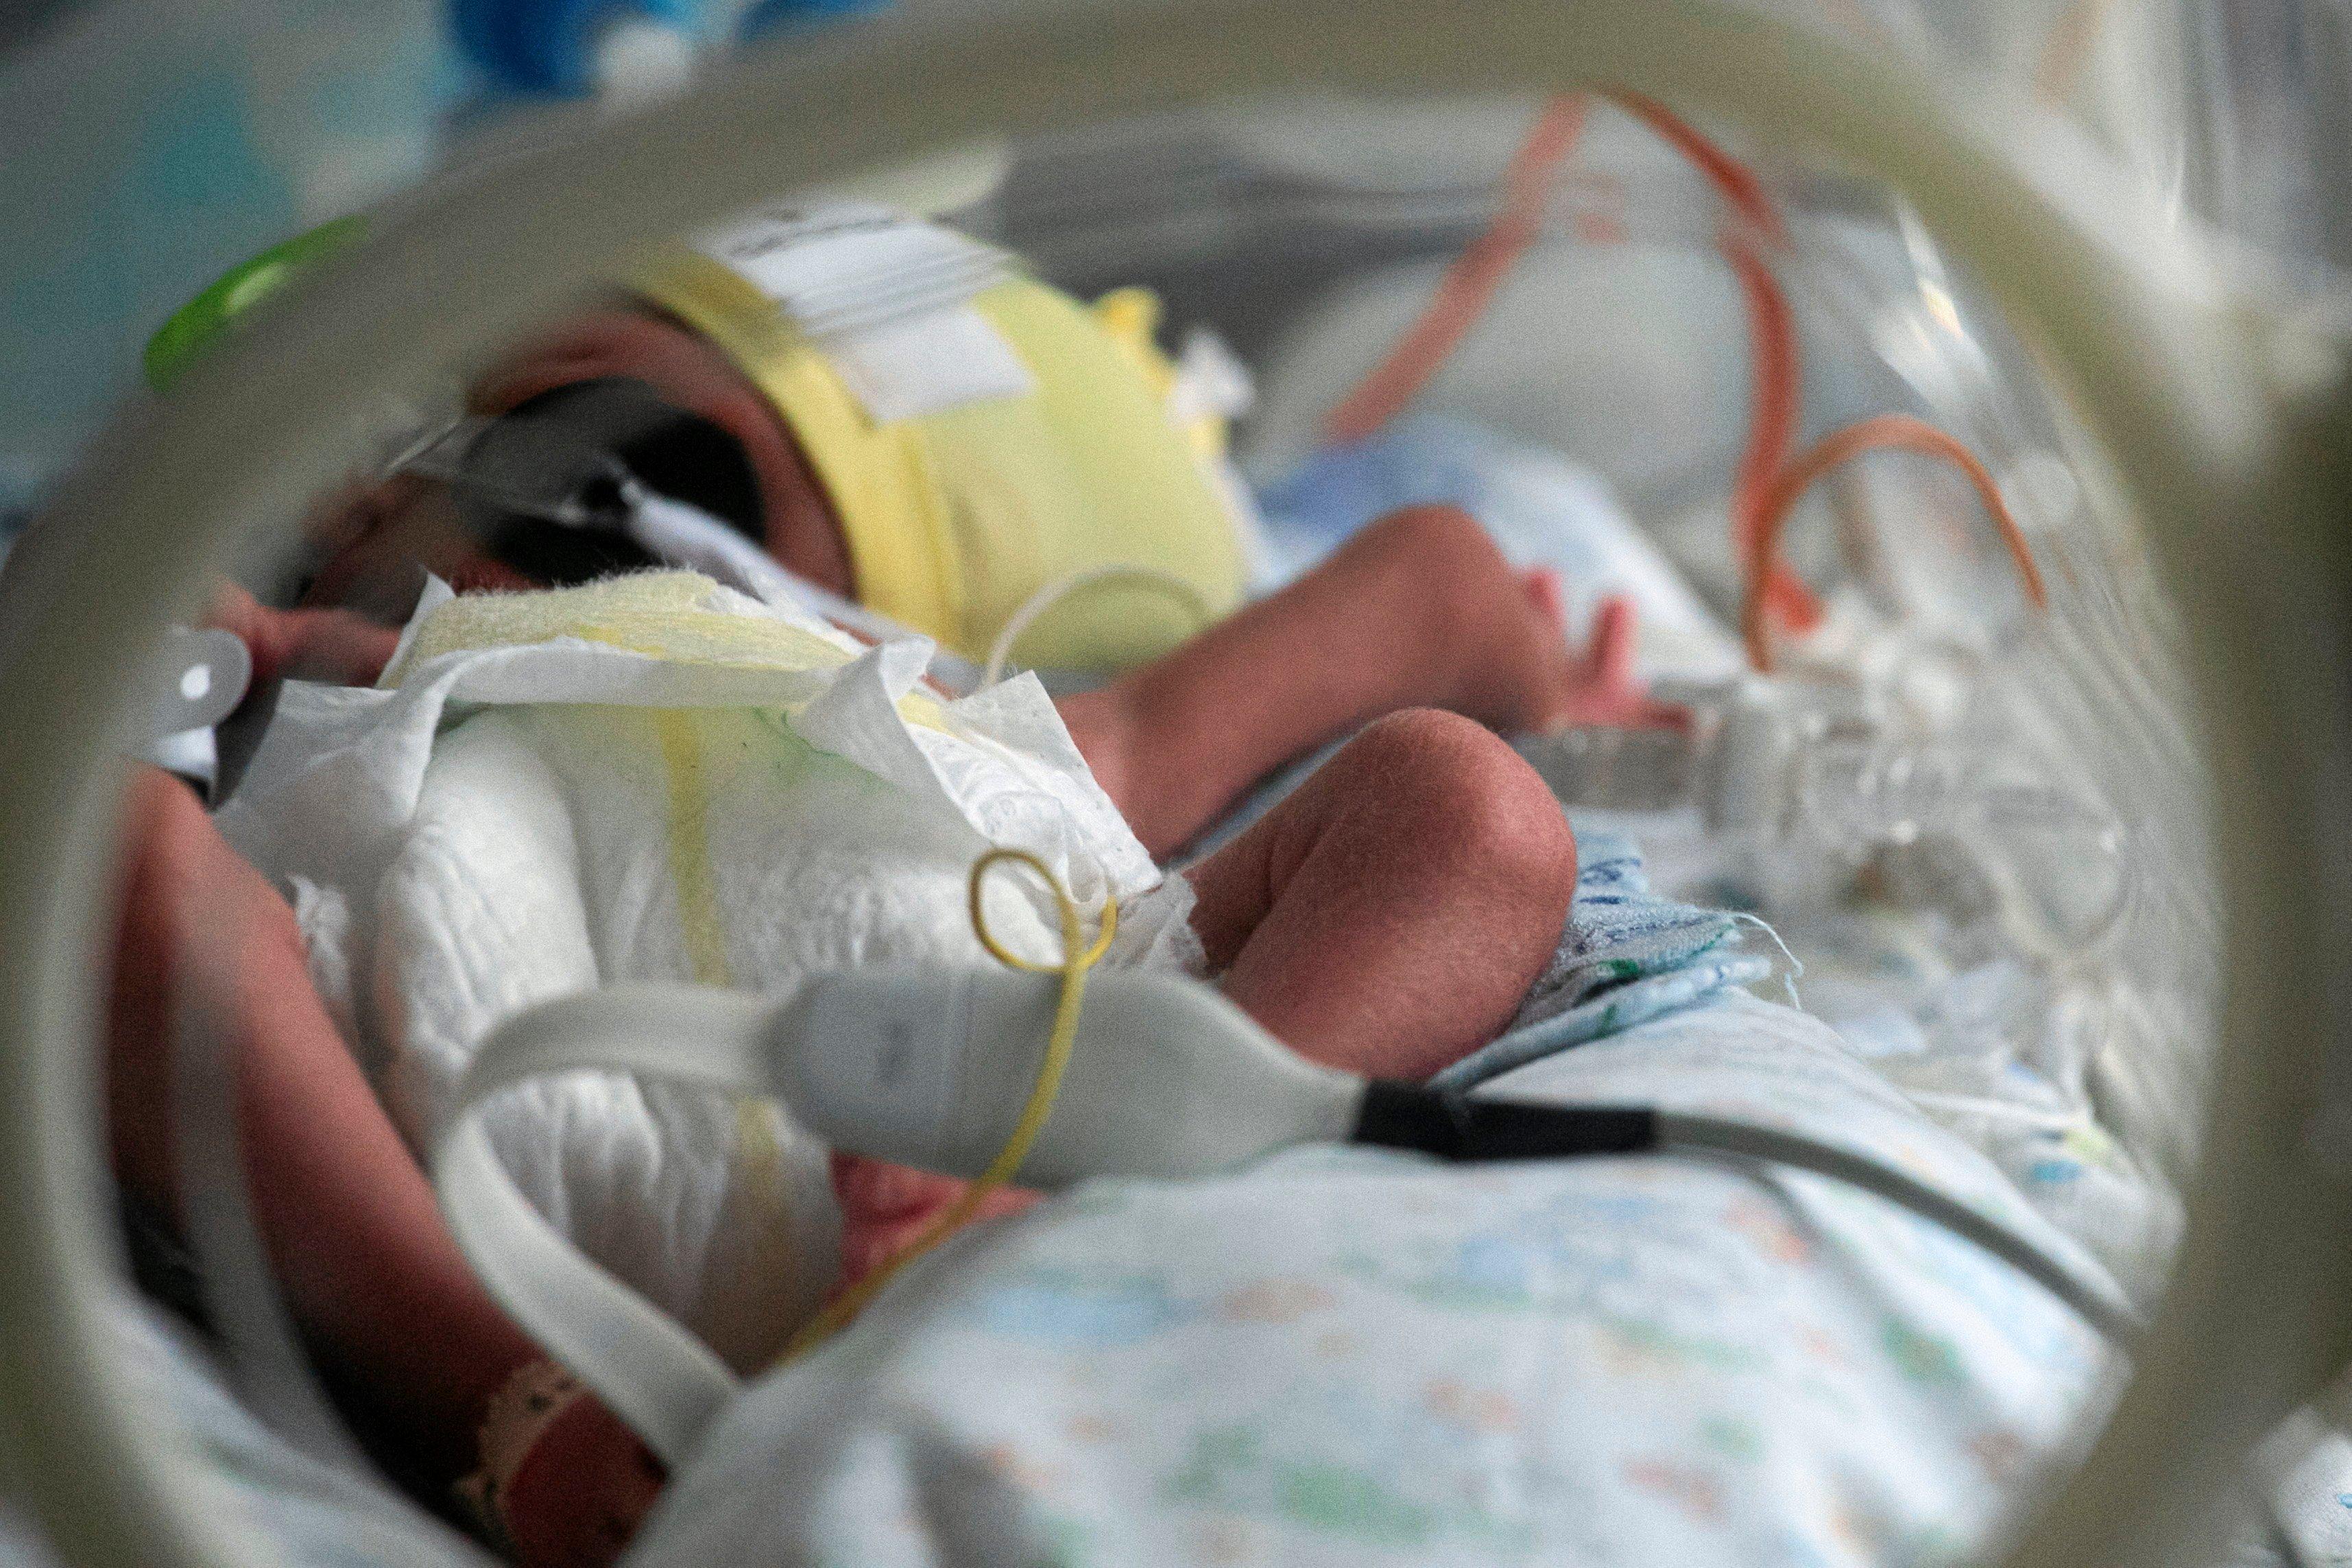 Niemowle po urodzeniu leży w szpitalnym łóżeczku